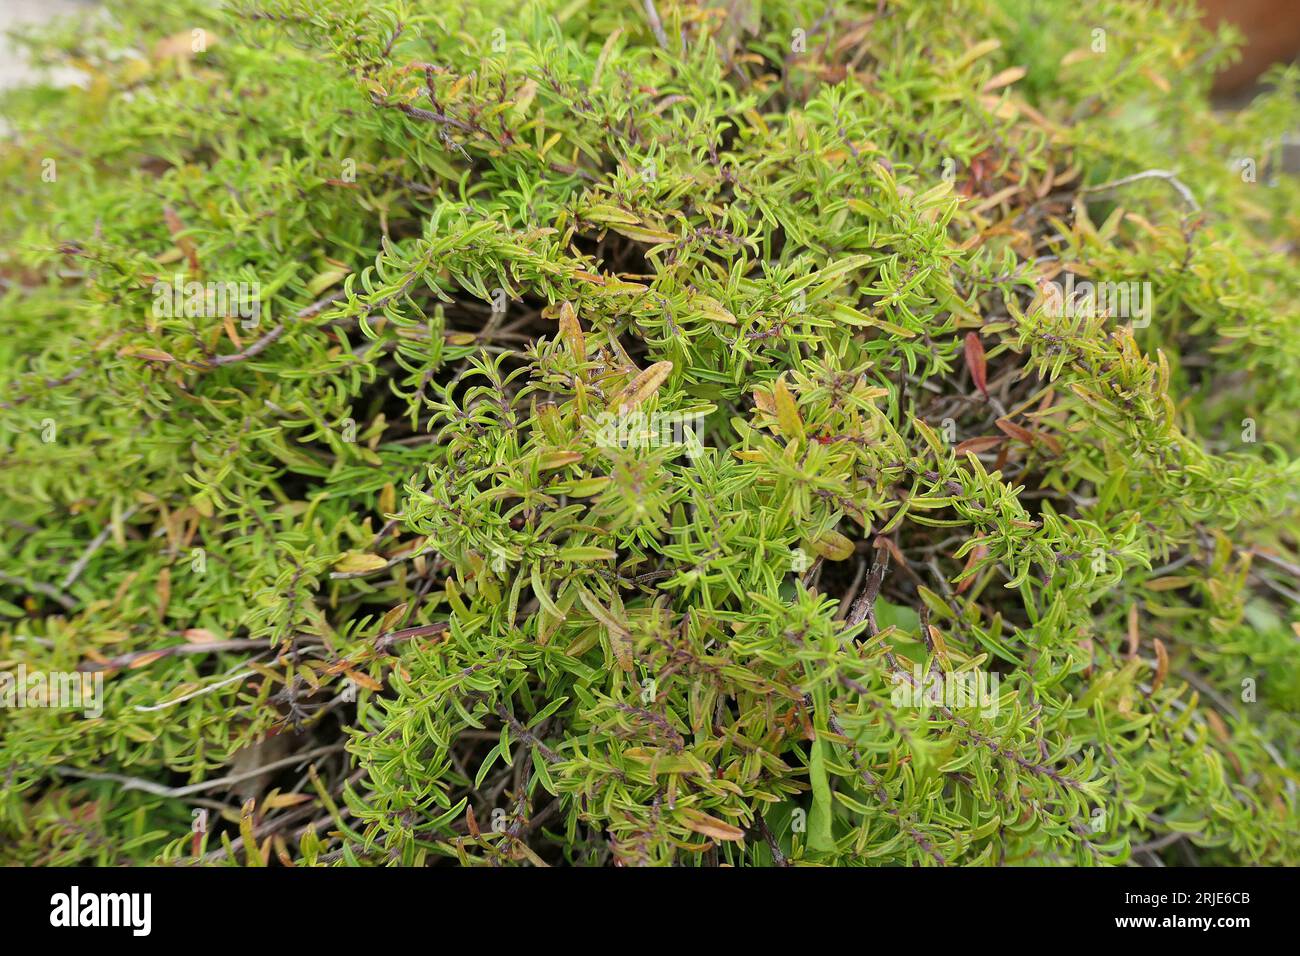 Gros plan de l'herbe rampante de jardin de rocaille Satureja spicigera ou sarriette rampante. Banque D'Images